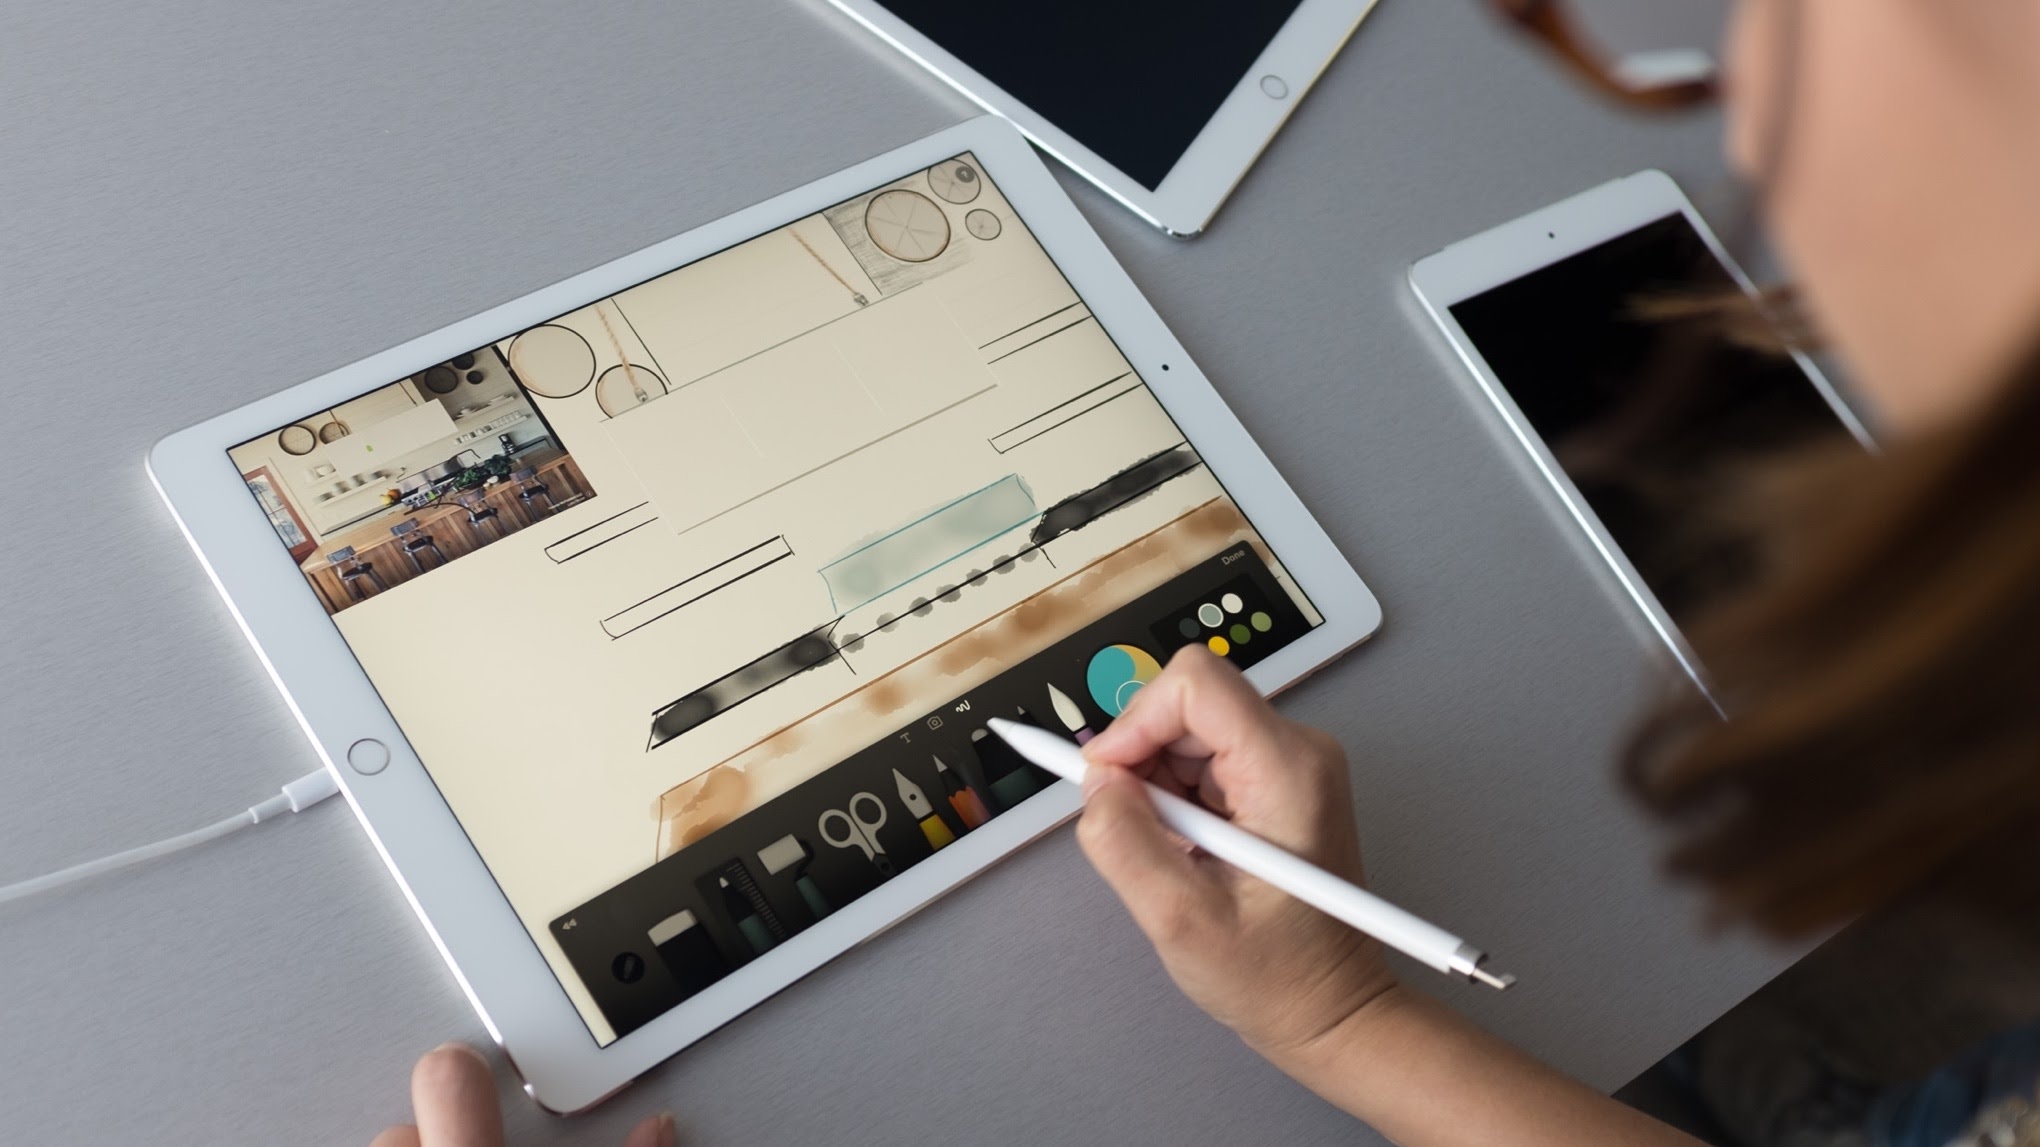 iPad לקריאייטיבים: שחרר את הפוטנציאל האמנותי שלך עם האפליקציות האלה